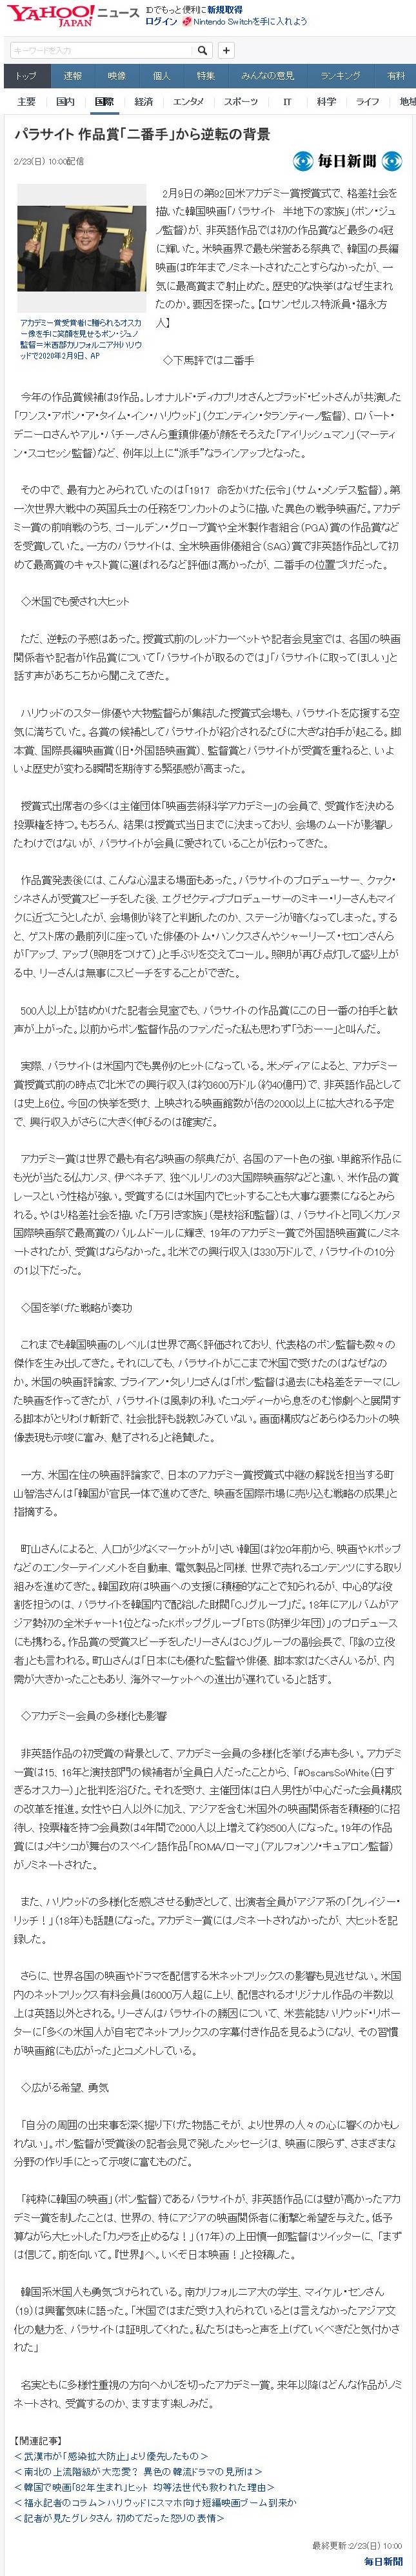 마이니치 신문:"기생충이 작품상 2인자에서 역전한 배경" | 인스티즈